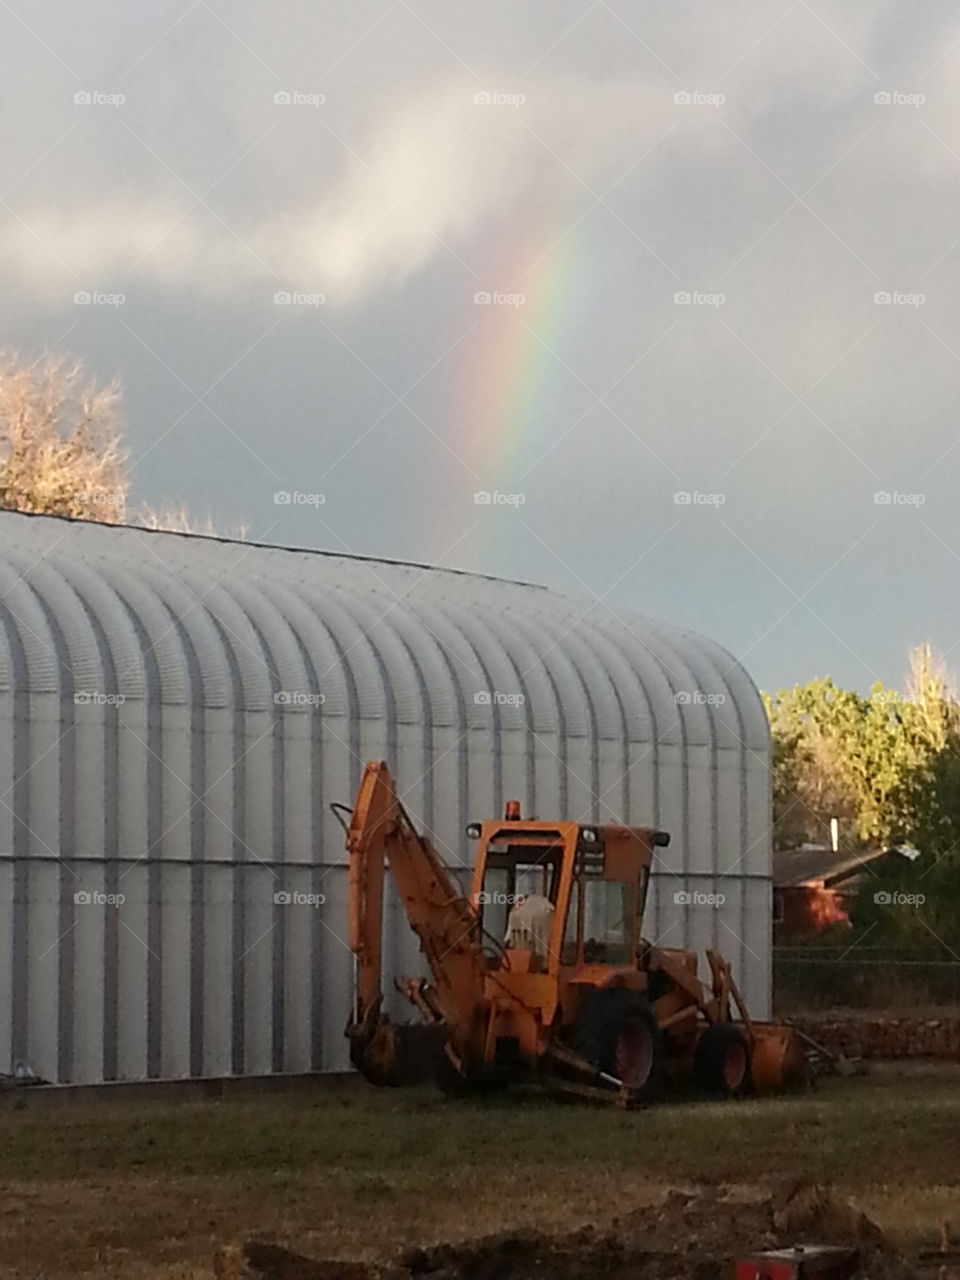 Rainbow over metal building. Rainbow over metal building